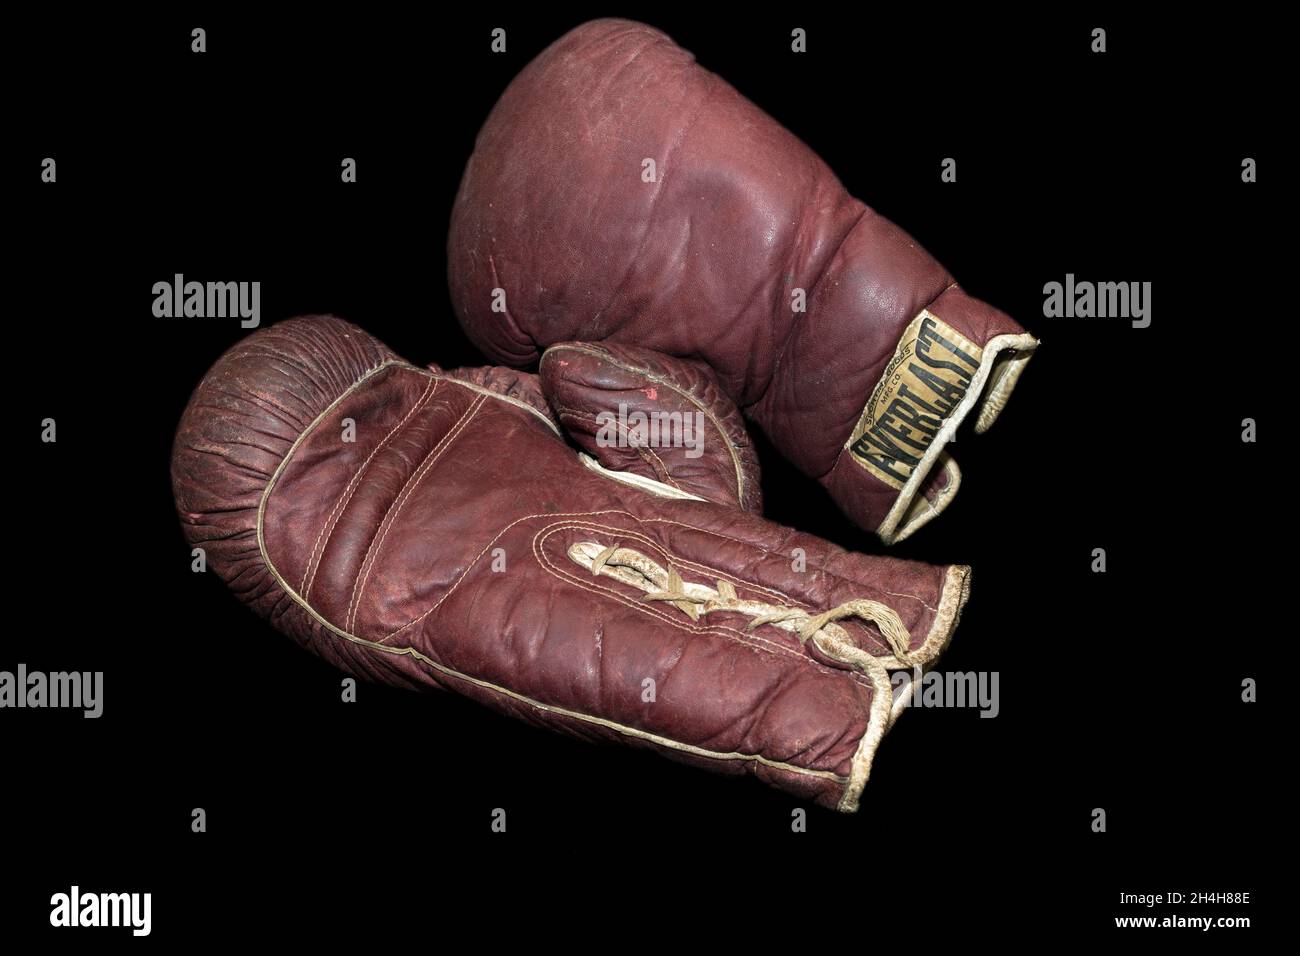 Everlast boxing immagini e fotografie stock ad alta risoluzione - Alamy